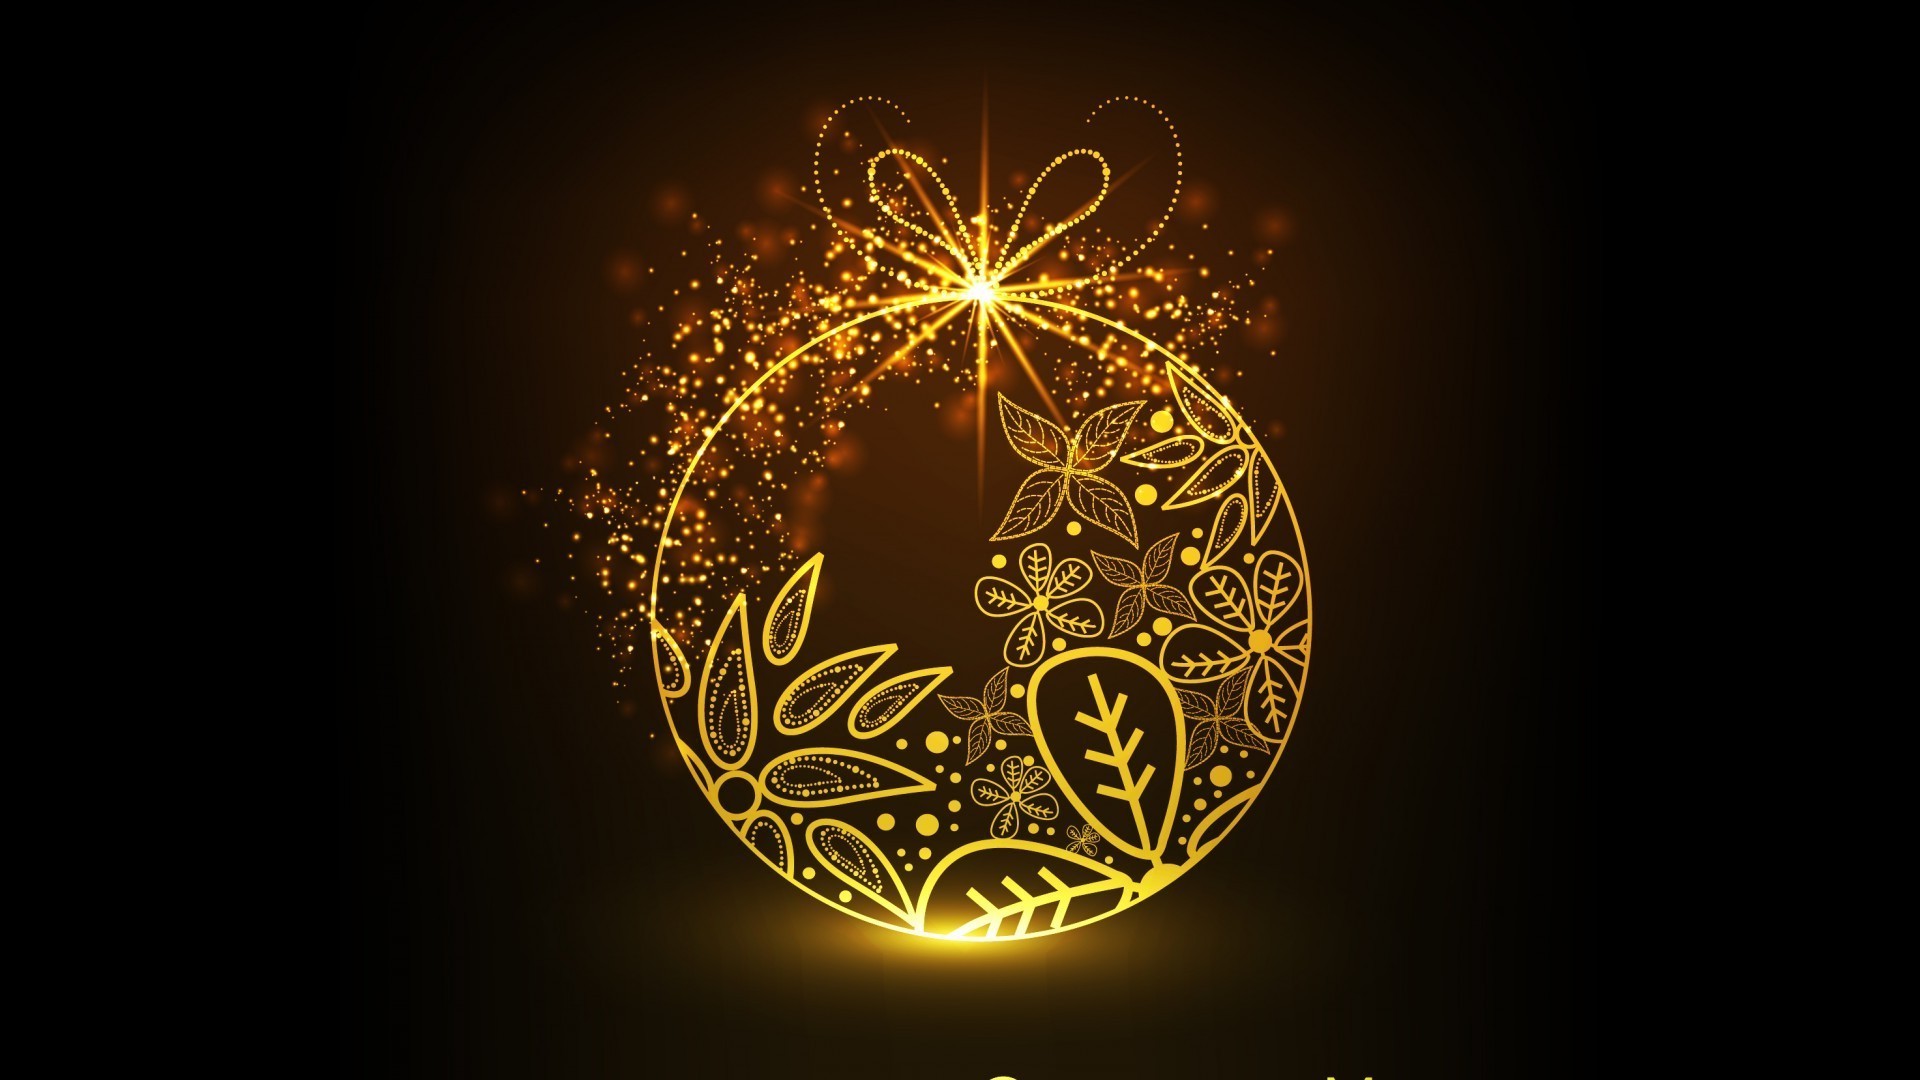 новый год рождество яркий дизайн украшения рабочего стола иллюстрация зима аннотация золото праздник светит